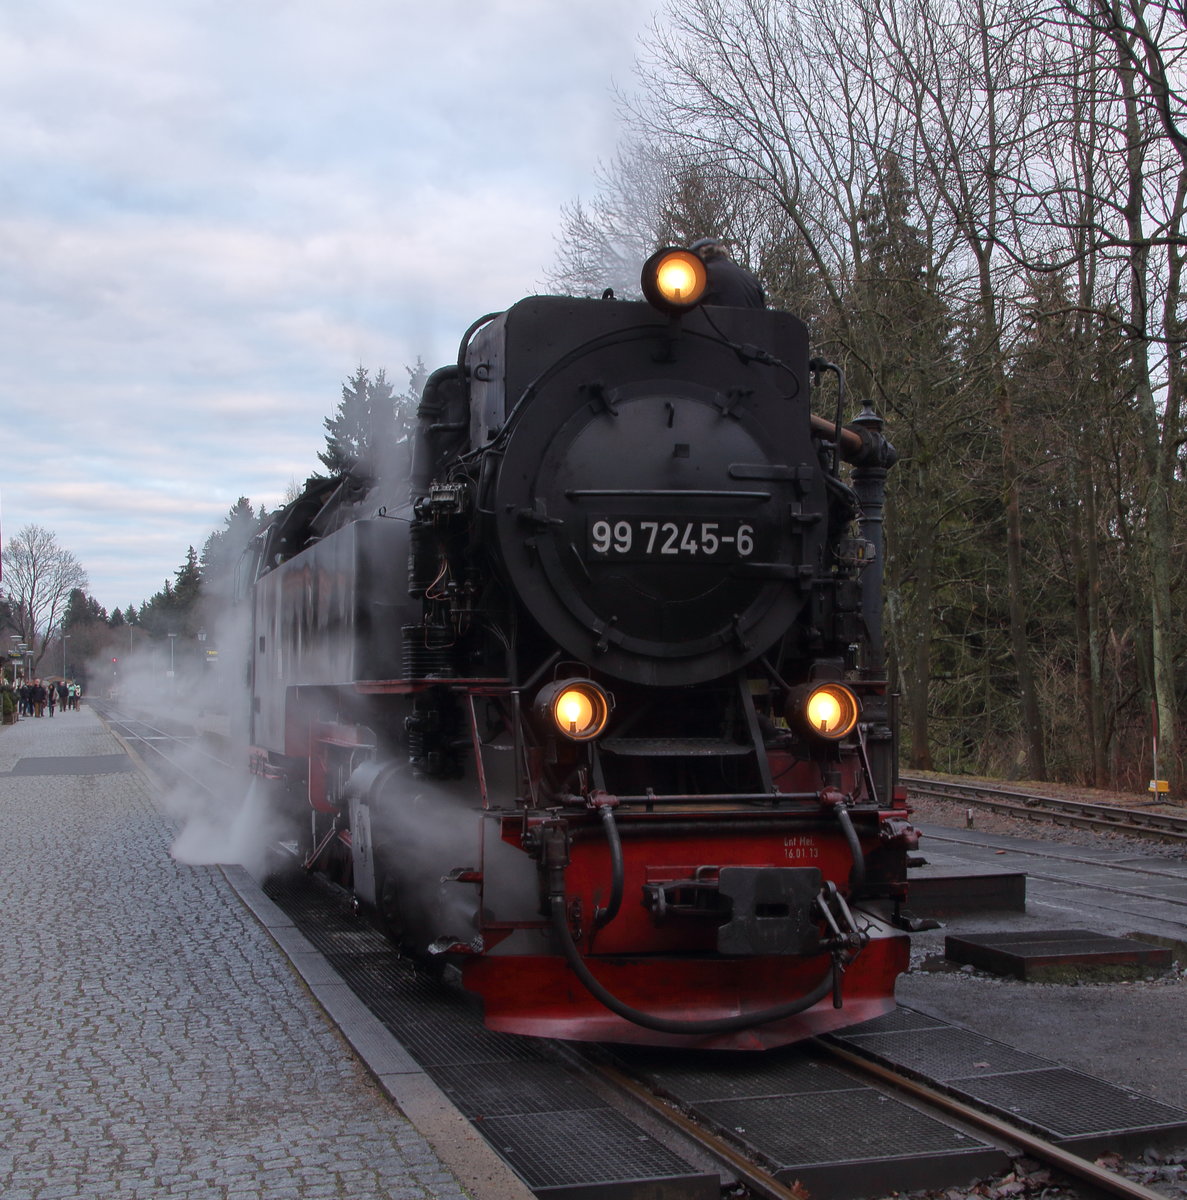 99 7245-6 ist mit P8914 (Eisfelder Talmühle - Wernigerode) in Drei Annen Hohne angekommen und hat sich zum Wasserfassen vom Zug getrennt. Gleich wird P8929 (Brocken - Nordhausen Nord) den Bahnhof erreichen, dessen Lok übernimmt den Zug nach Wernigerode und die hier zu sehende Lok fährt nach Nordhausen.

Drei Annen Hohne, 17. Dezember 2016